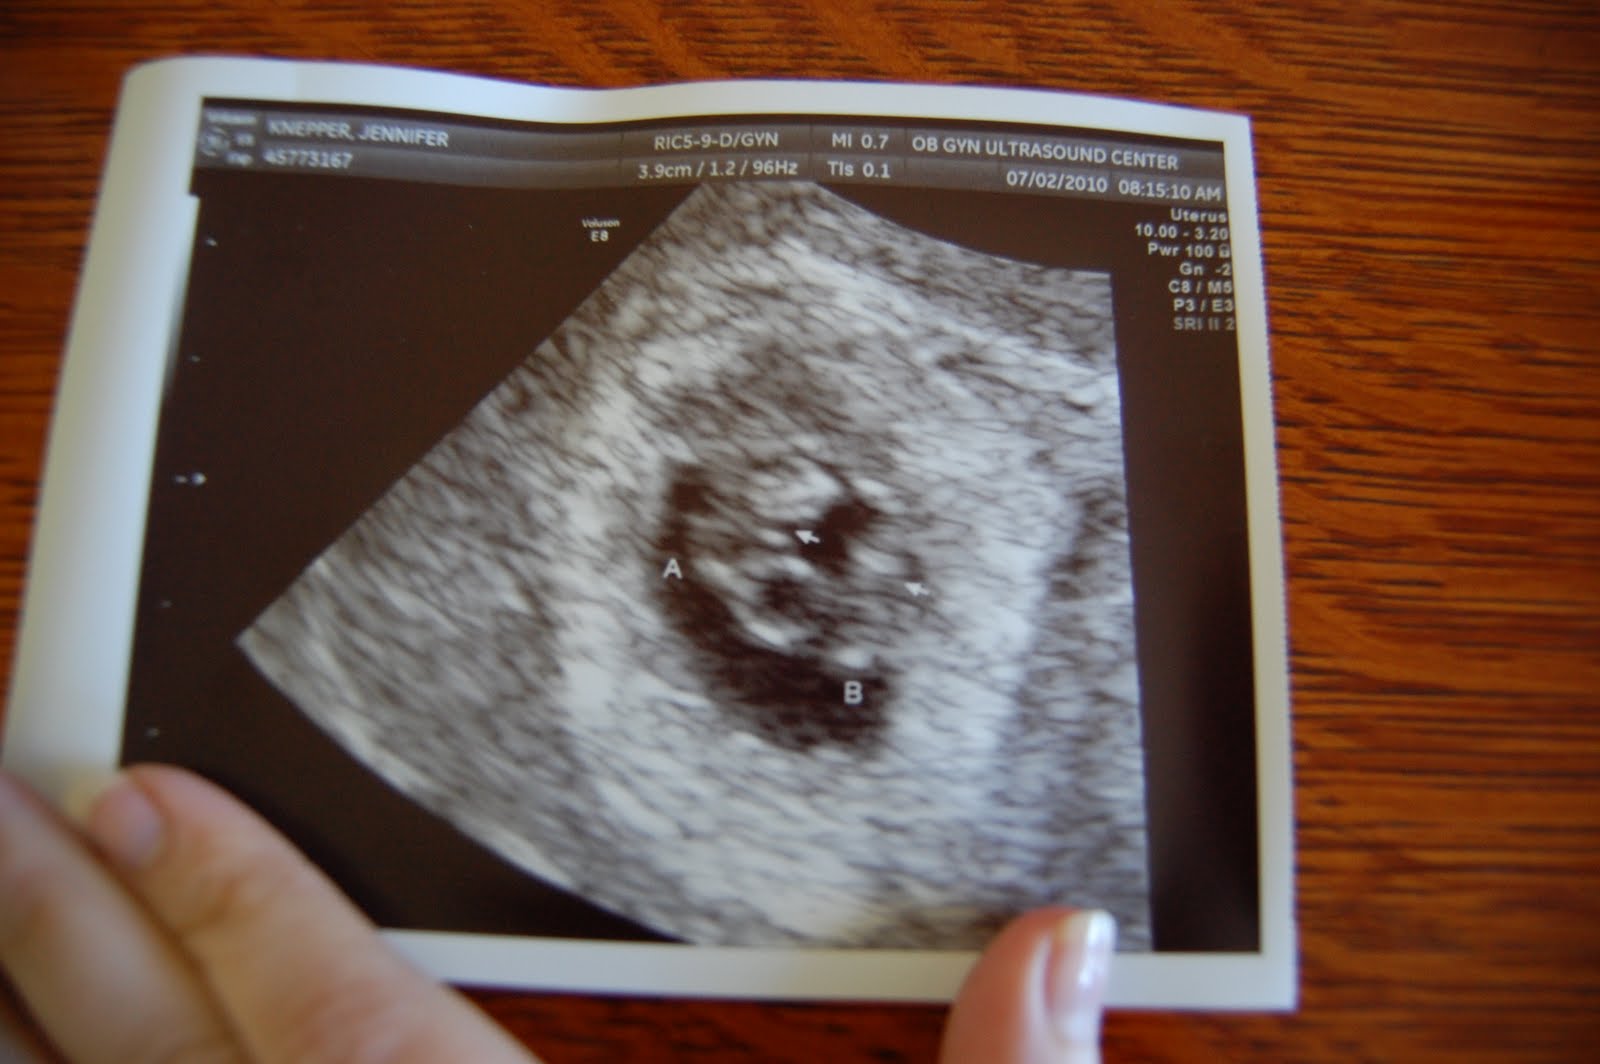 Узи на сроке 6 недель. УЗИ близнецов на 6 неделе беременности. Многоплодная беременность УЗИ 6 недель. УЗИ 5-6 недель беременности двойня. УЗИ 6 недель беременности Близнецы.